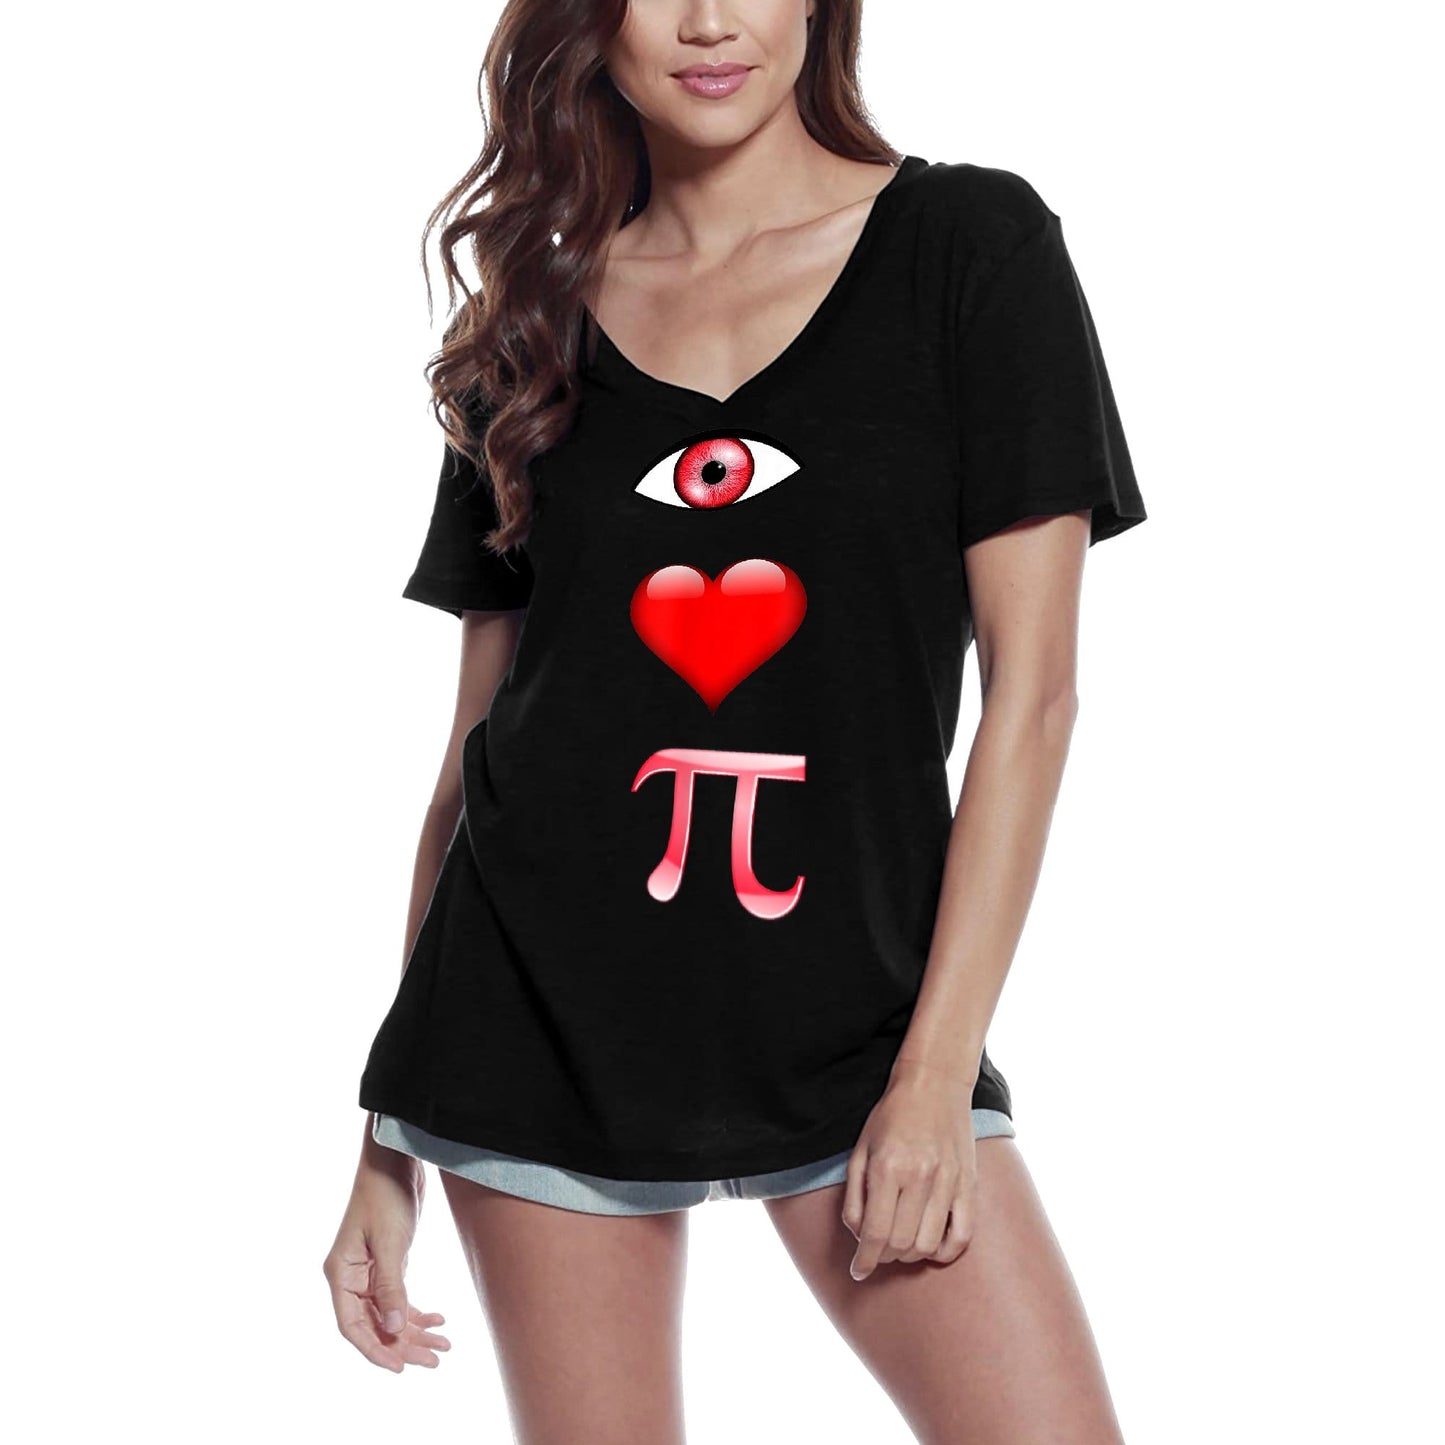 ULTRABASIC Women's V-Neck T-Shirt I Love Pi - Math Nerds Lovers Tee Shirt